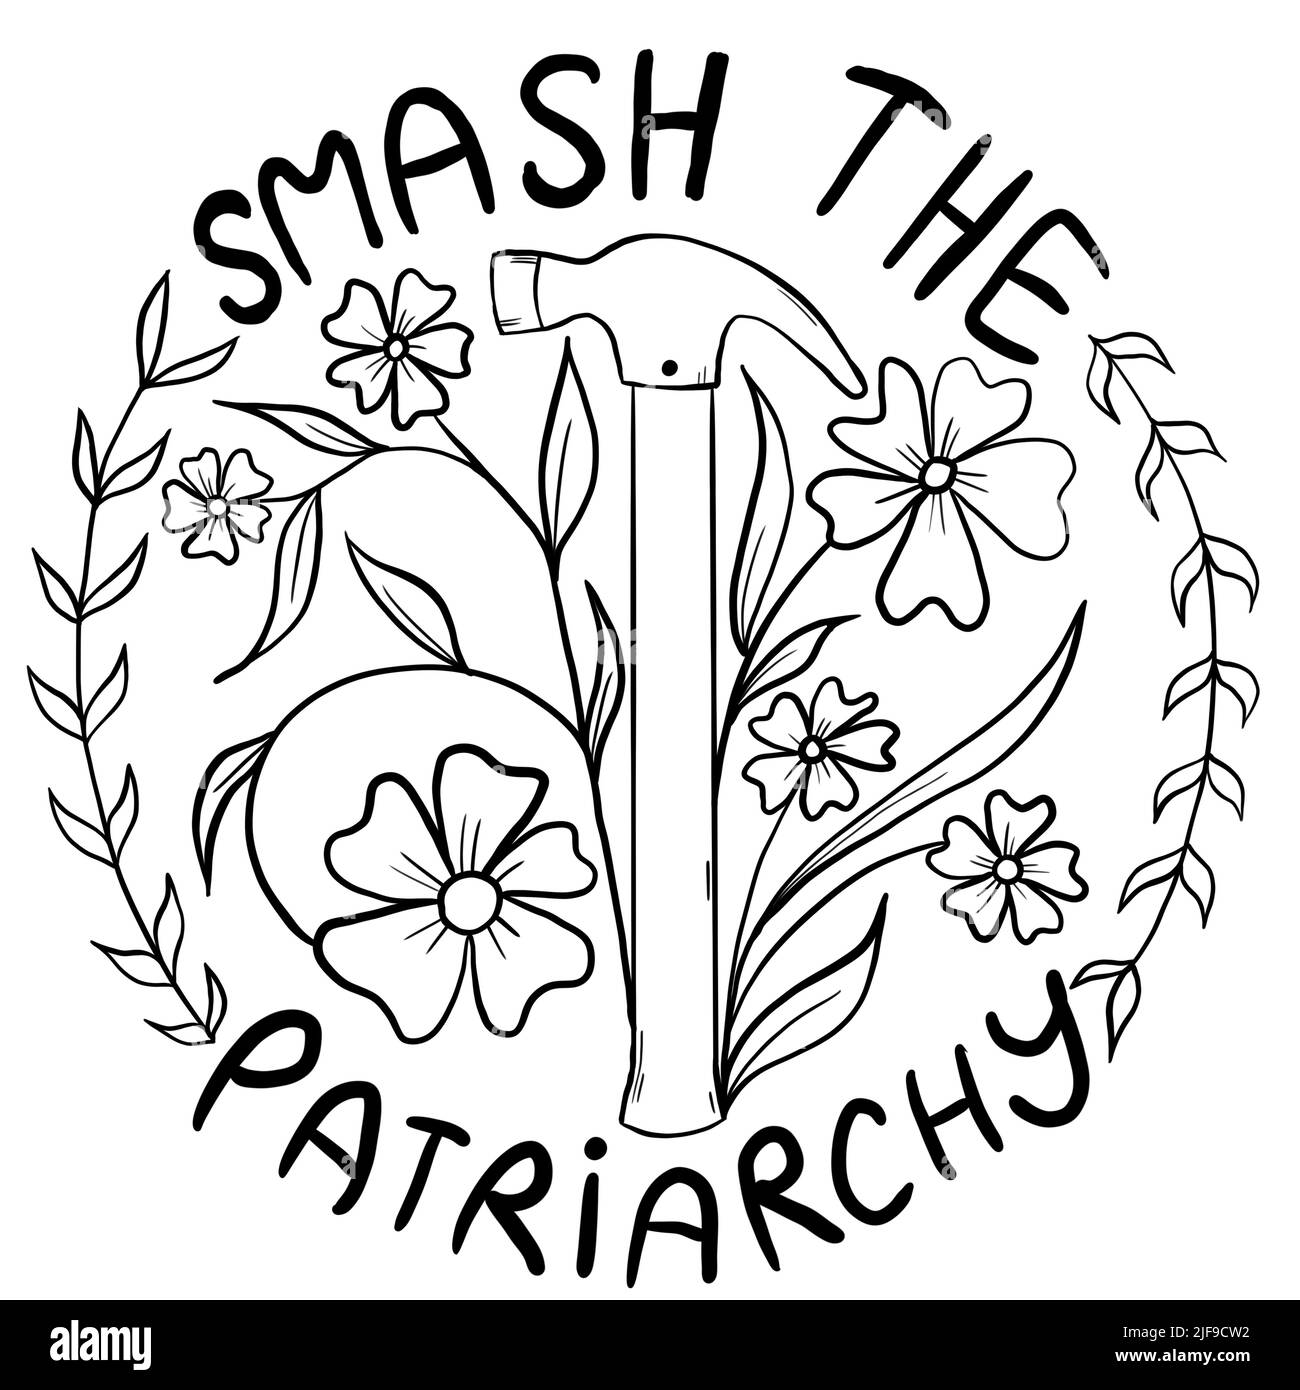 Distruggi il patriarcato disegno a mano con fiori martello. Concetto di attivismo del femminismo, diritti riproduttivi di aborto, disegno di riga contro vanga Foto Stock